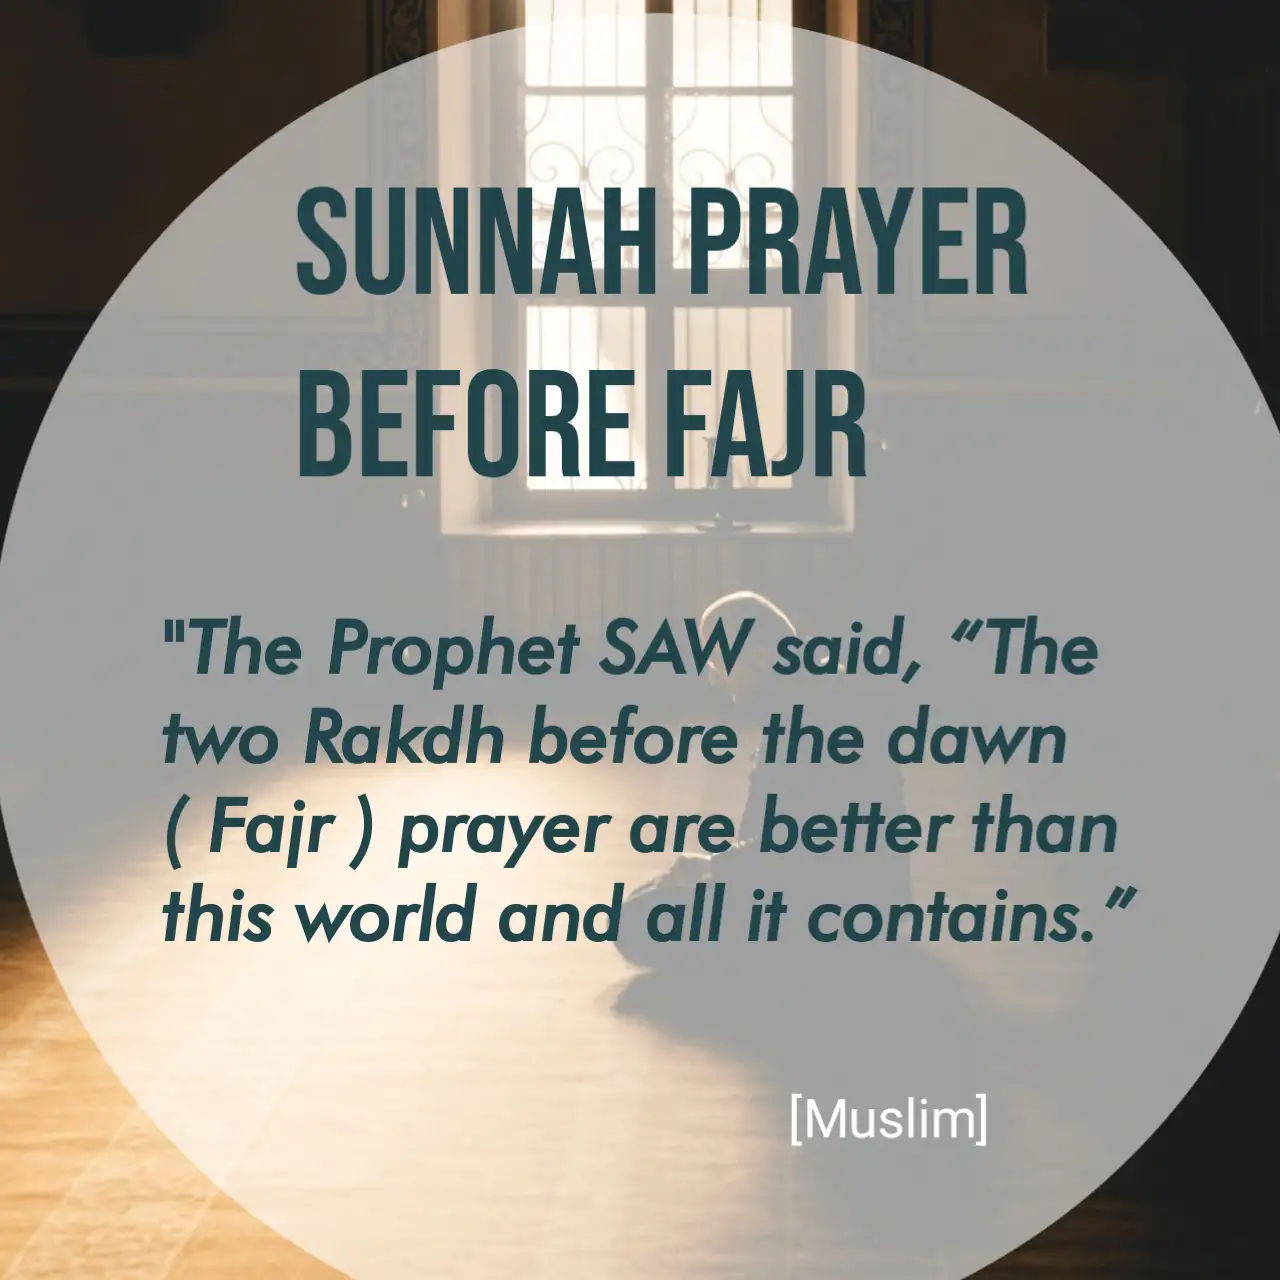 Sunnah Prayer Before Fajr